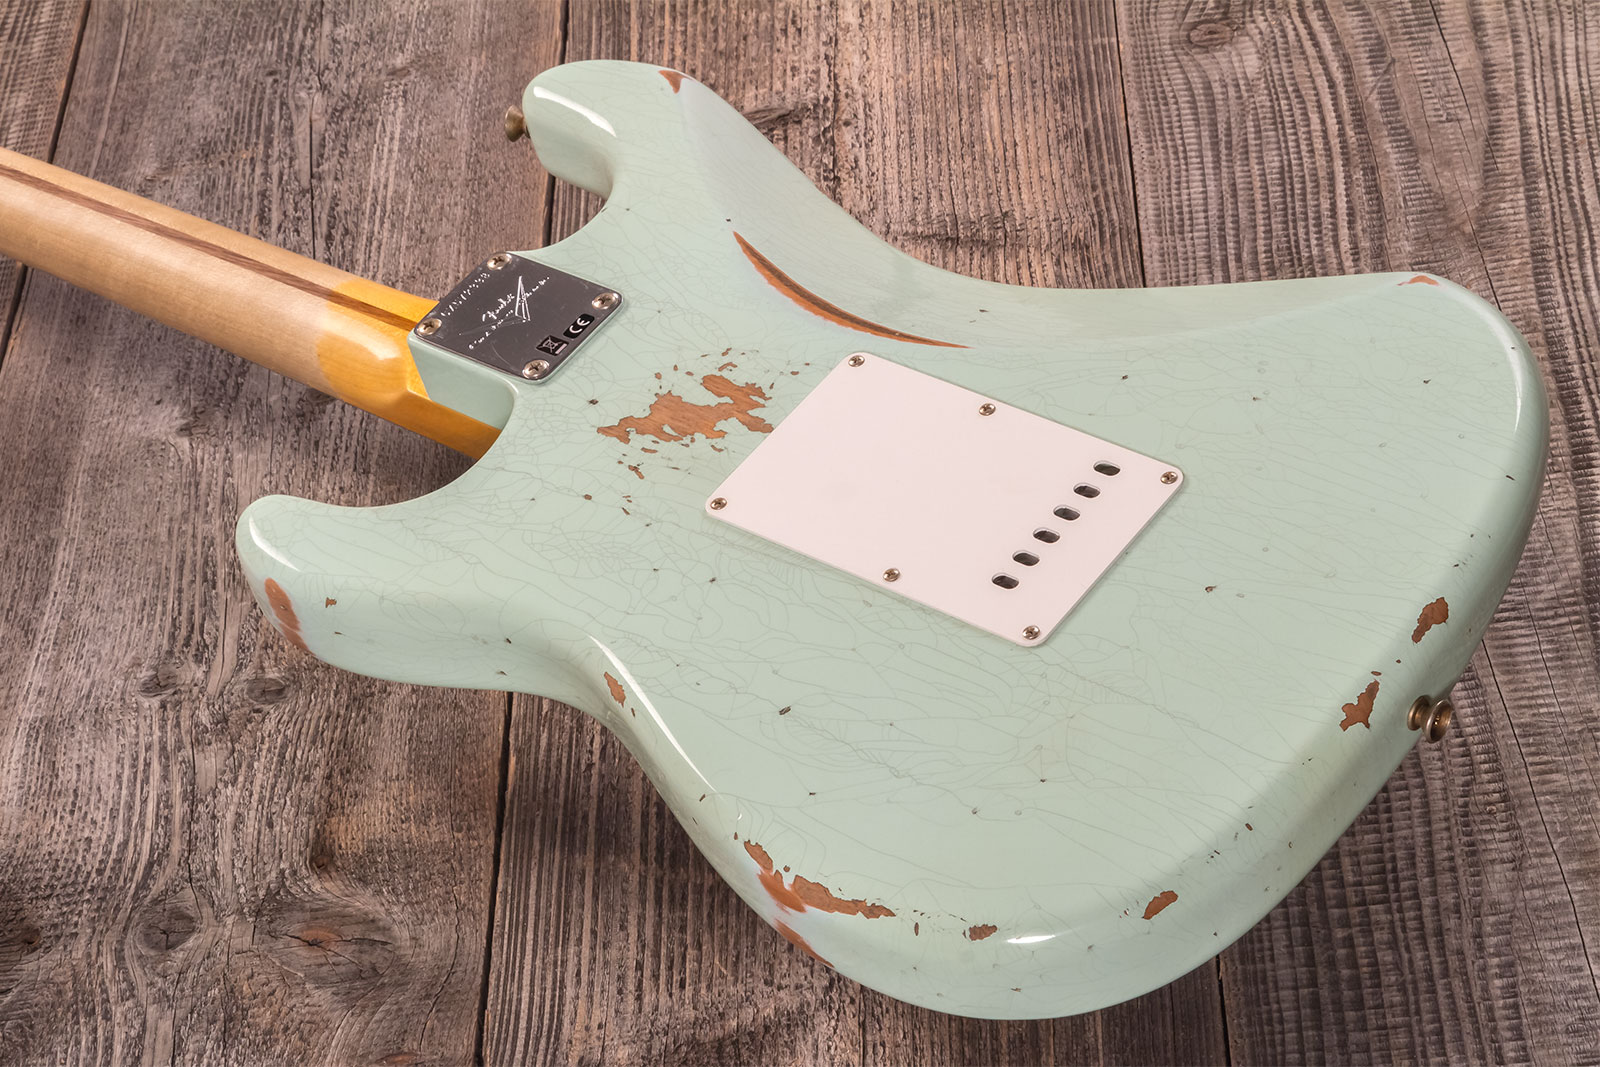 Fender Custom Shop Strat 1958 3s Trem Mn #cz572338 - Relic Aged Surf Green - Str shape electric guitar - Variation 6